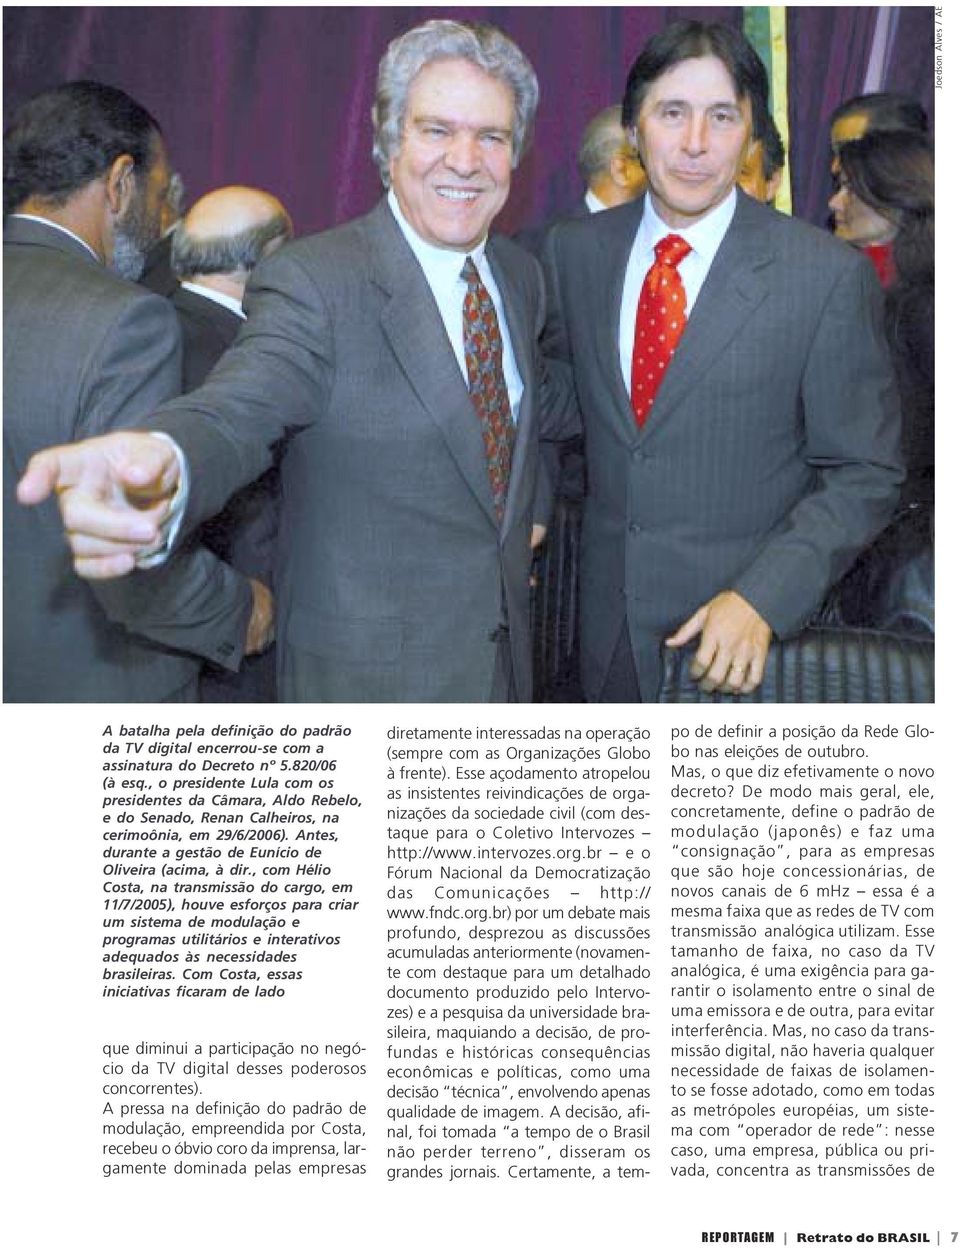 , com Hélio Costa, na transmissão do cargo, em 11/7/2005), houve esforços para criar um sistema de modulação e programas utilitários e interativos adequados às necessidades brasileiras.